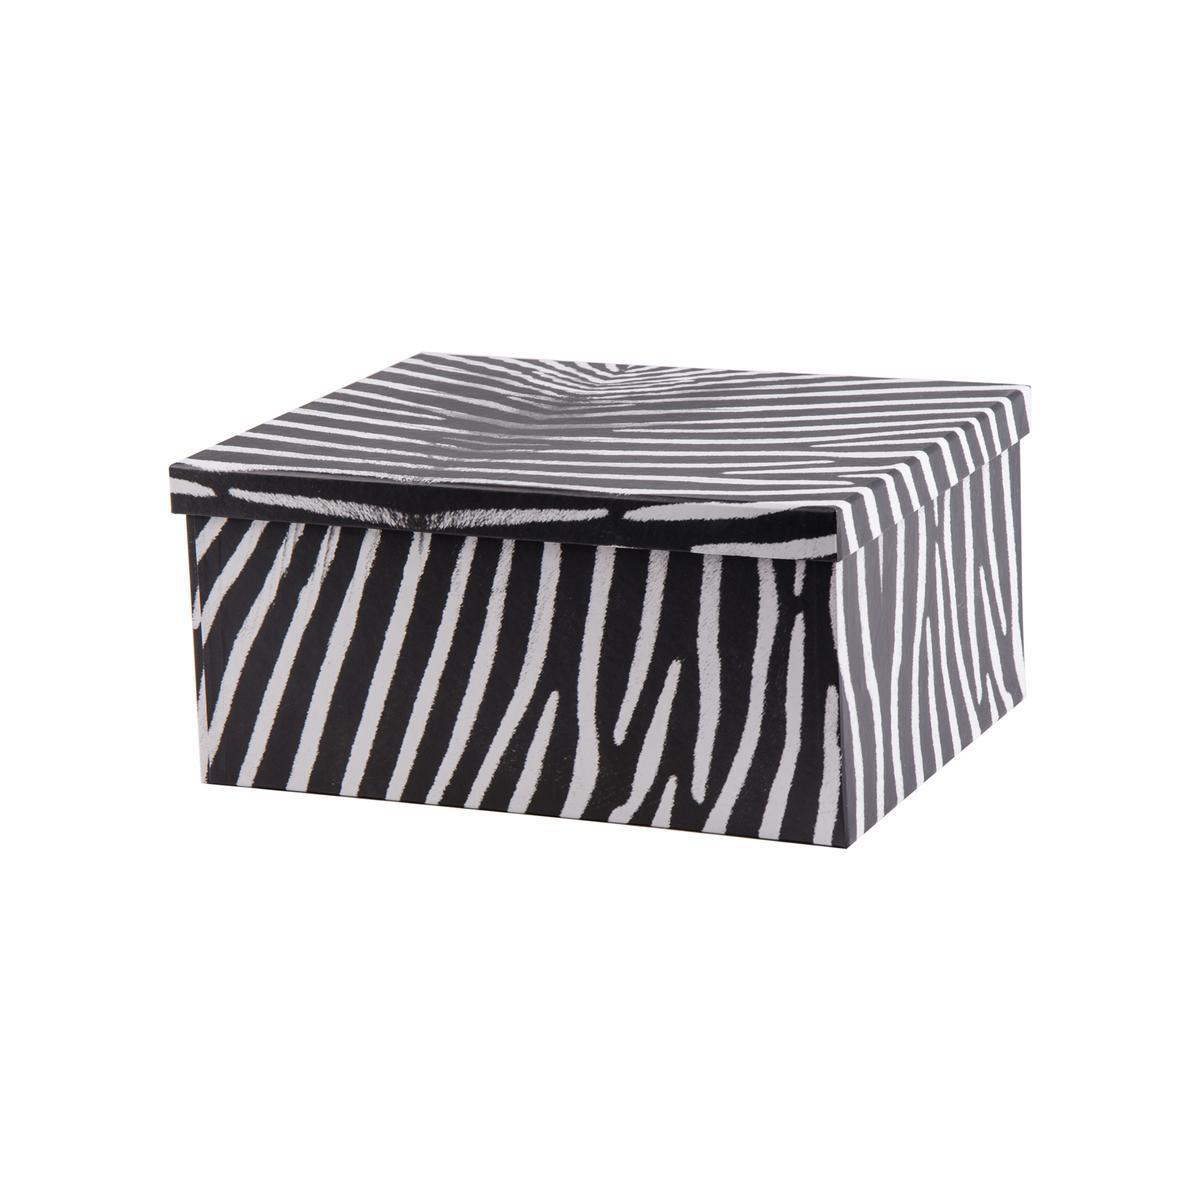 Boite zébré en carton - 30,5 x 23,5 x 13,5 cm - Noir et blanc